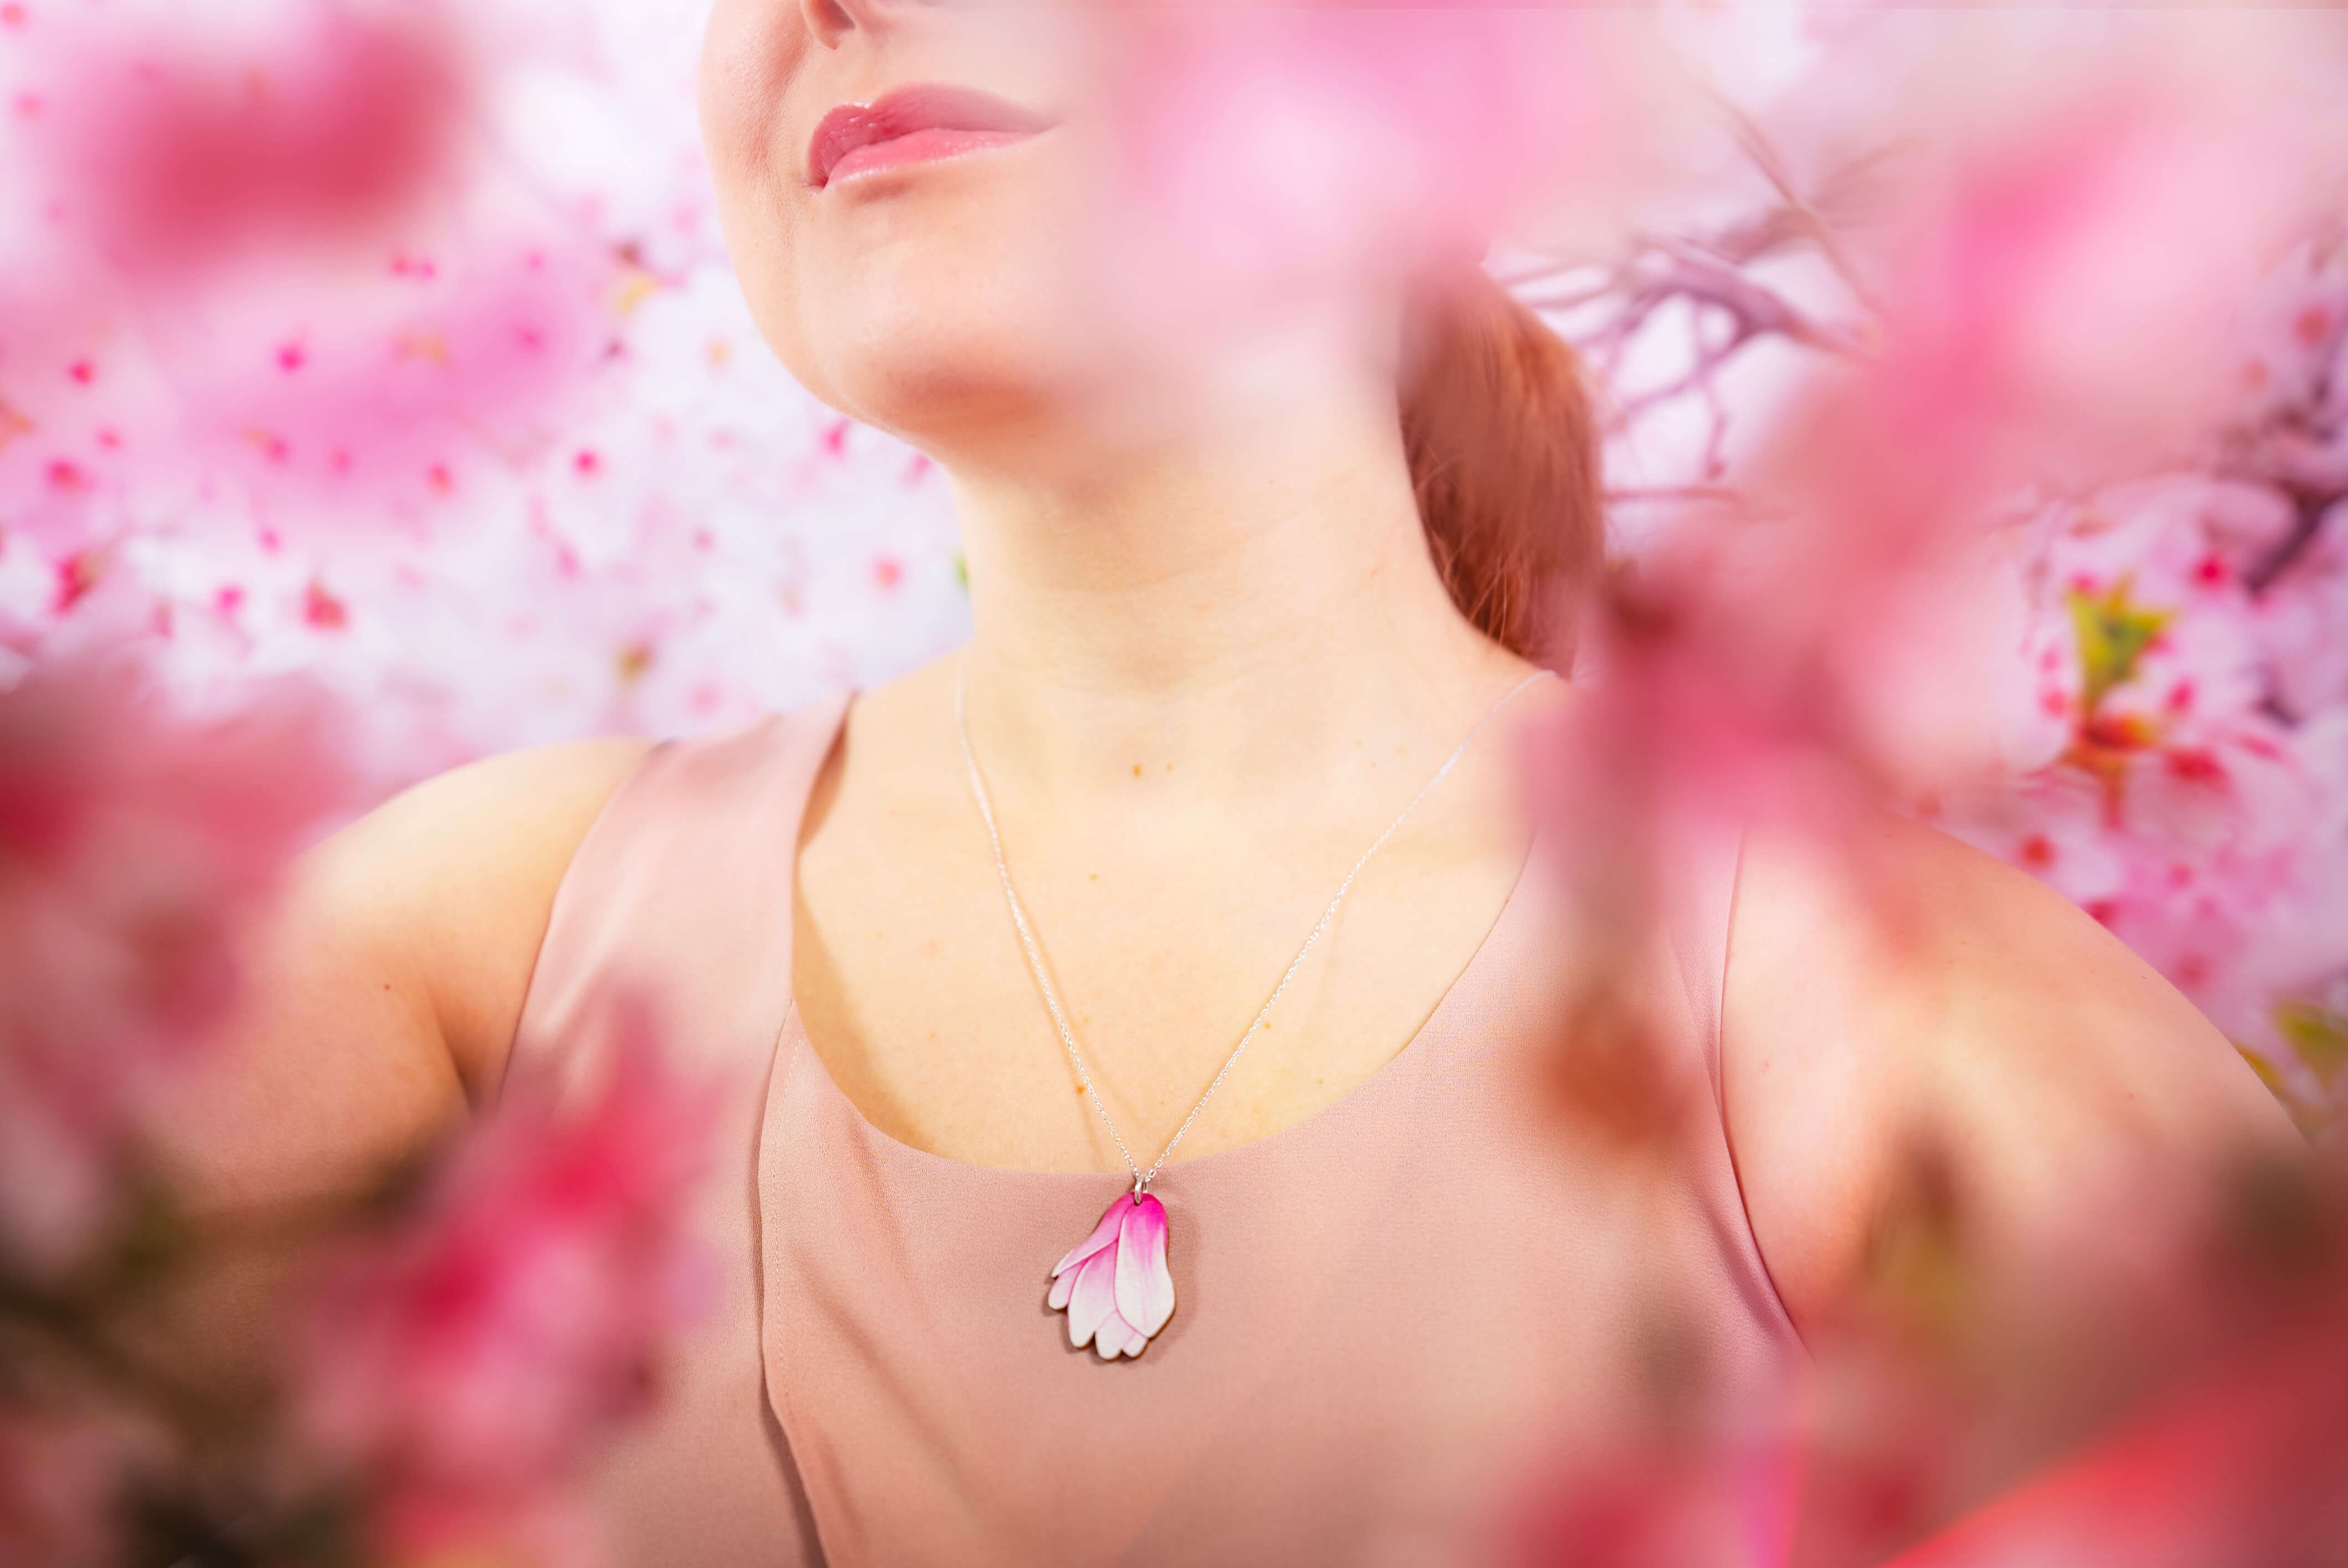 Japanilaisessa kulttuurissa magnoliat symboloivat rakkautta luontoa kohtaan, sinnikkyyttä ja arvokkuutta. Yleisesti ottaen vaaleanpunaisen magnolian on ajateltu symboloivan nuorekkuutta, viattomuutta ja iloa. Tämä kaulakoru asettuu lähelle sydäntä - merkityksellinen lahjaidea. Käsintehty Suomessa.